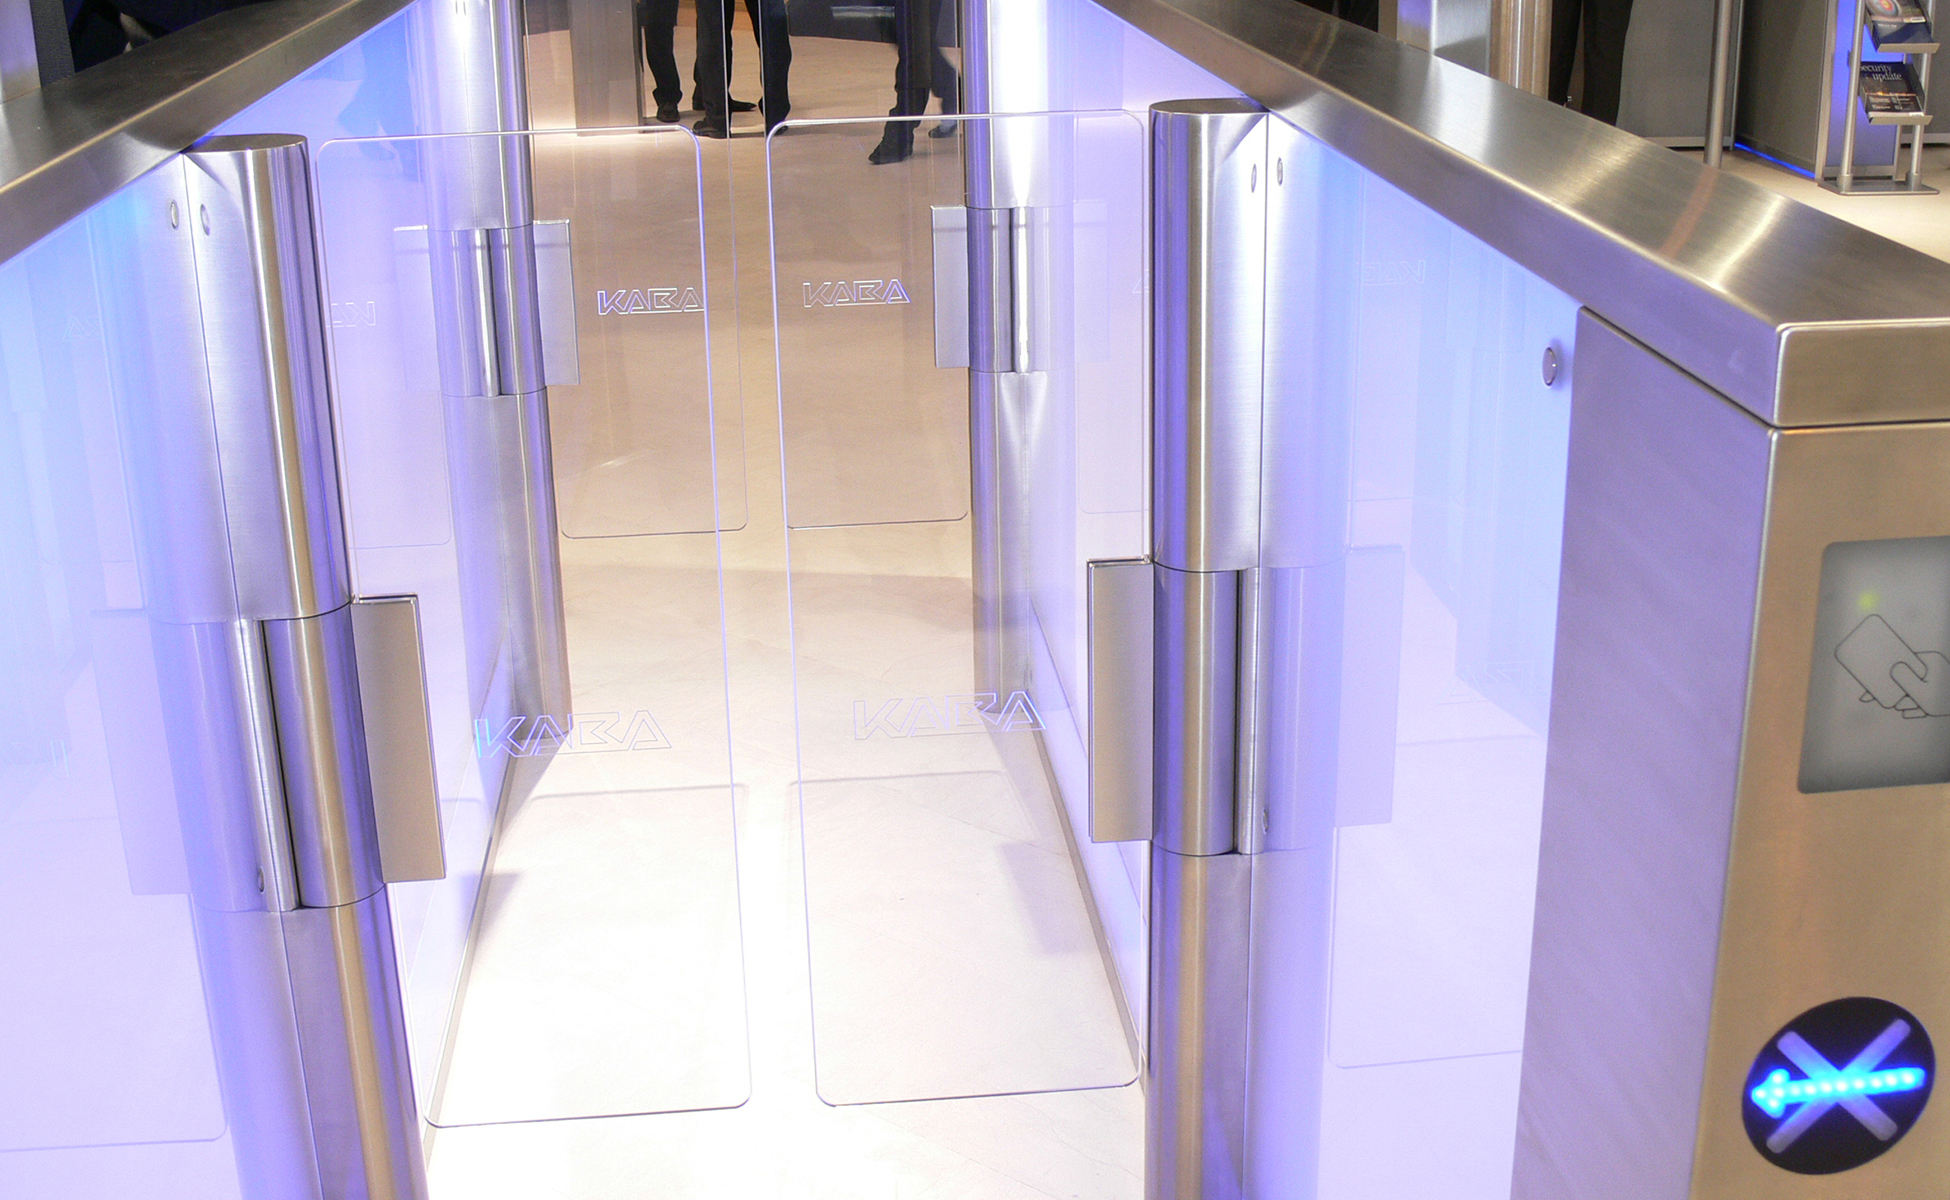 Zutrittsystem für Messen und Veranstaltungen aus Acrylglas in Kombination mit Licht